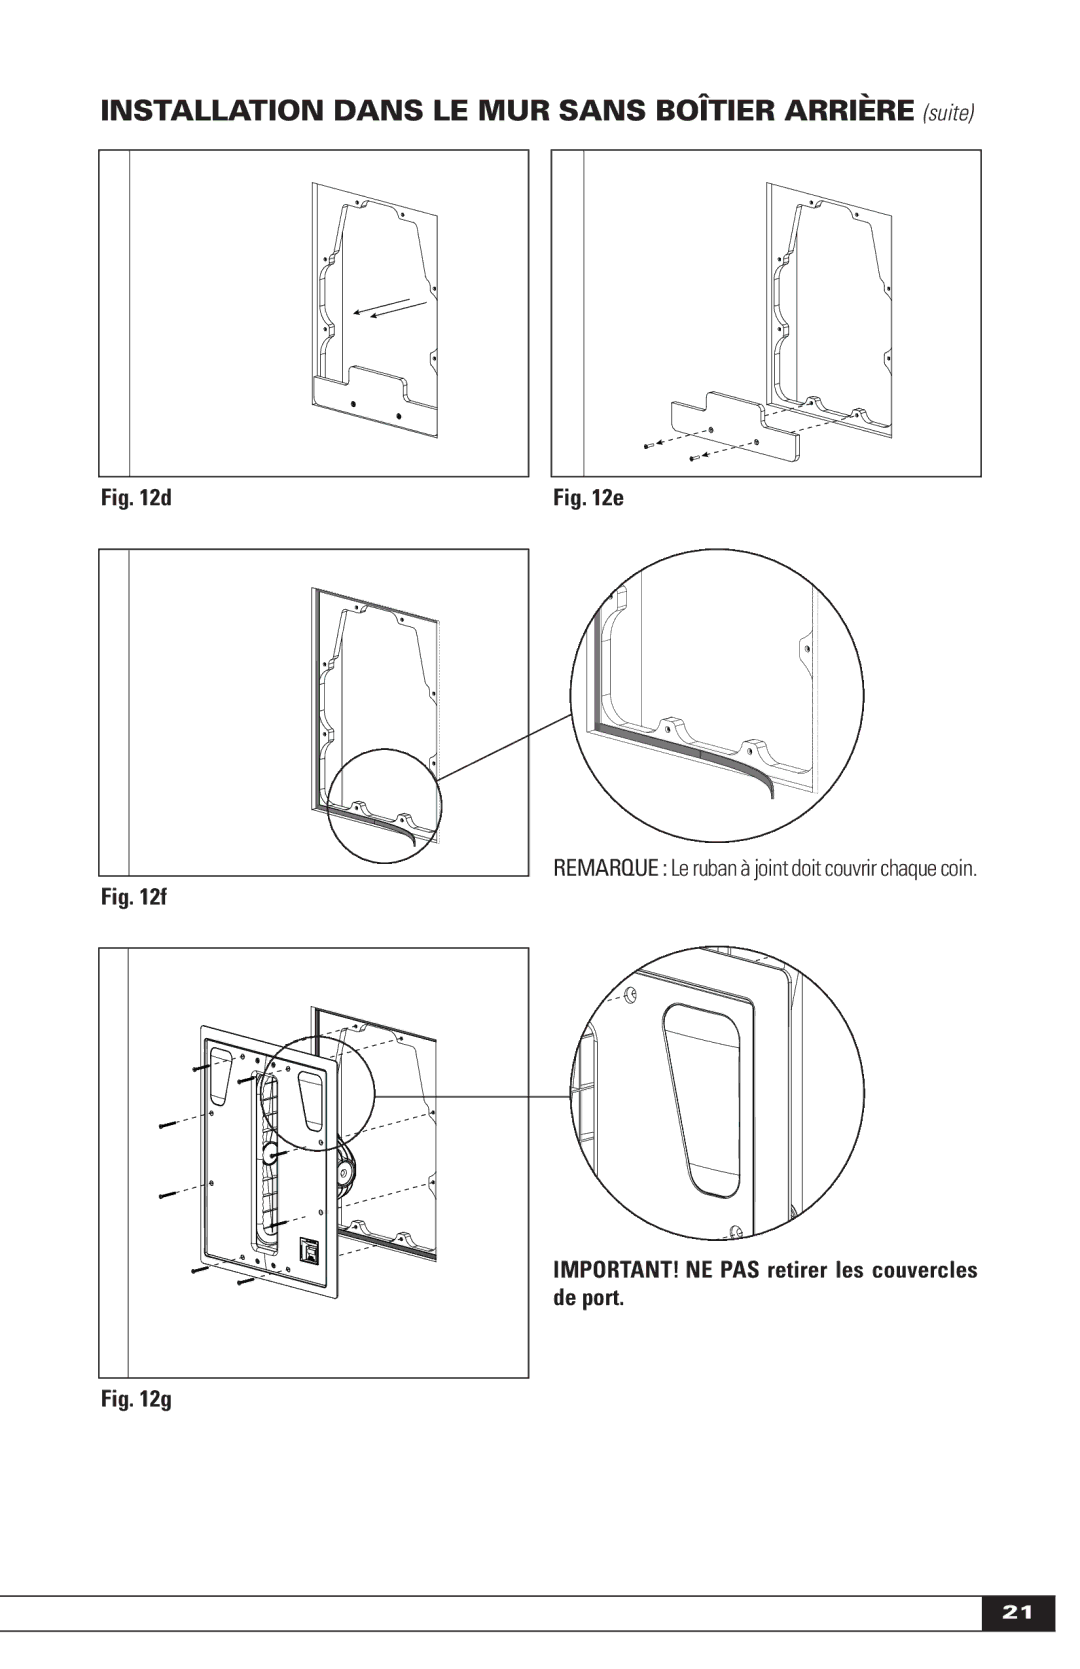 Paradigm IN-WALL SUBWOOFERS, OM-605 owner manual Installation Dans LE MUR Sans Boîtier Arrière suite 